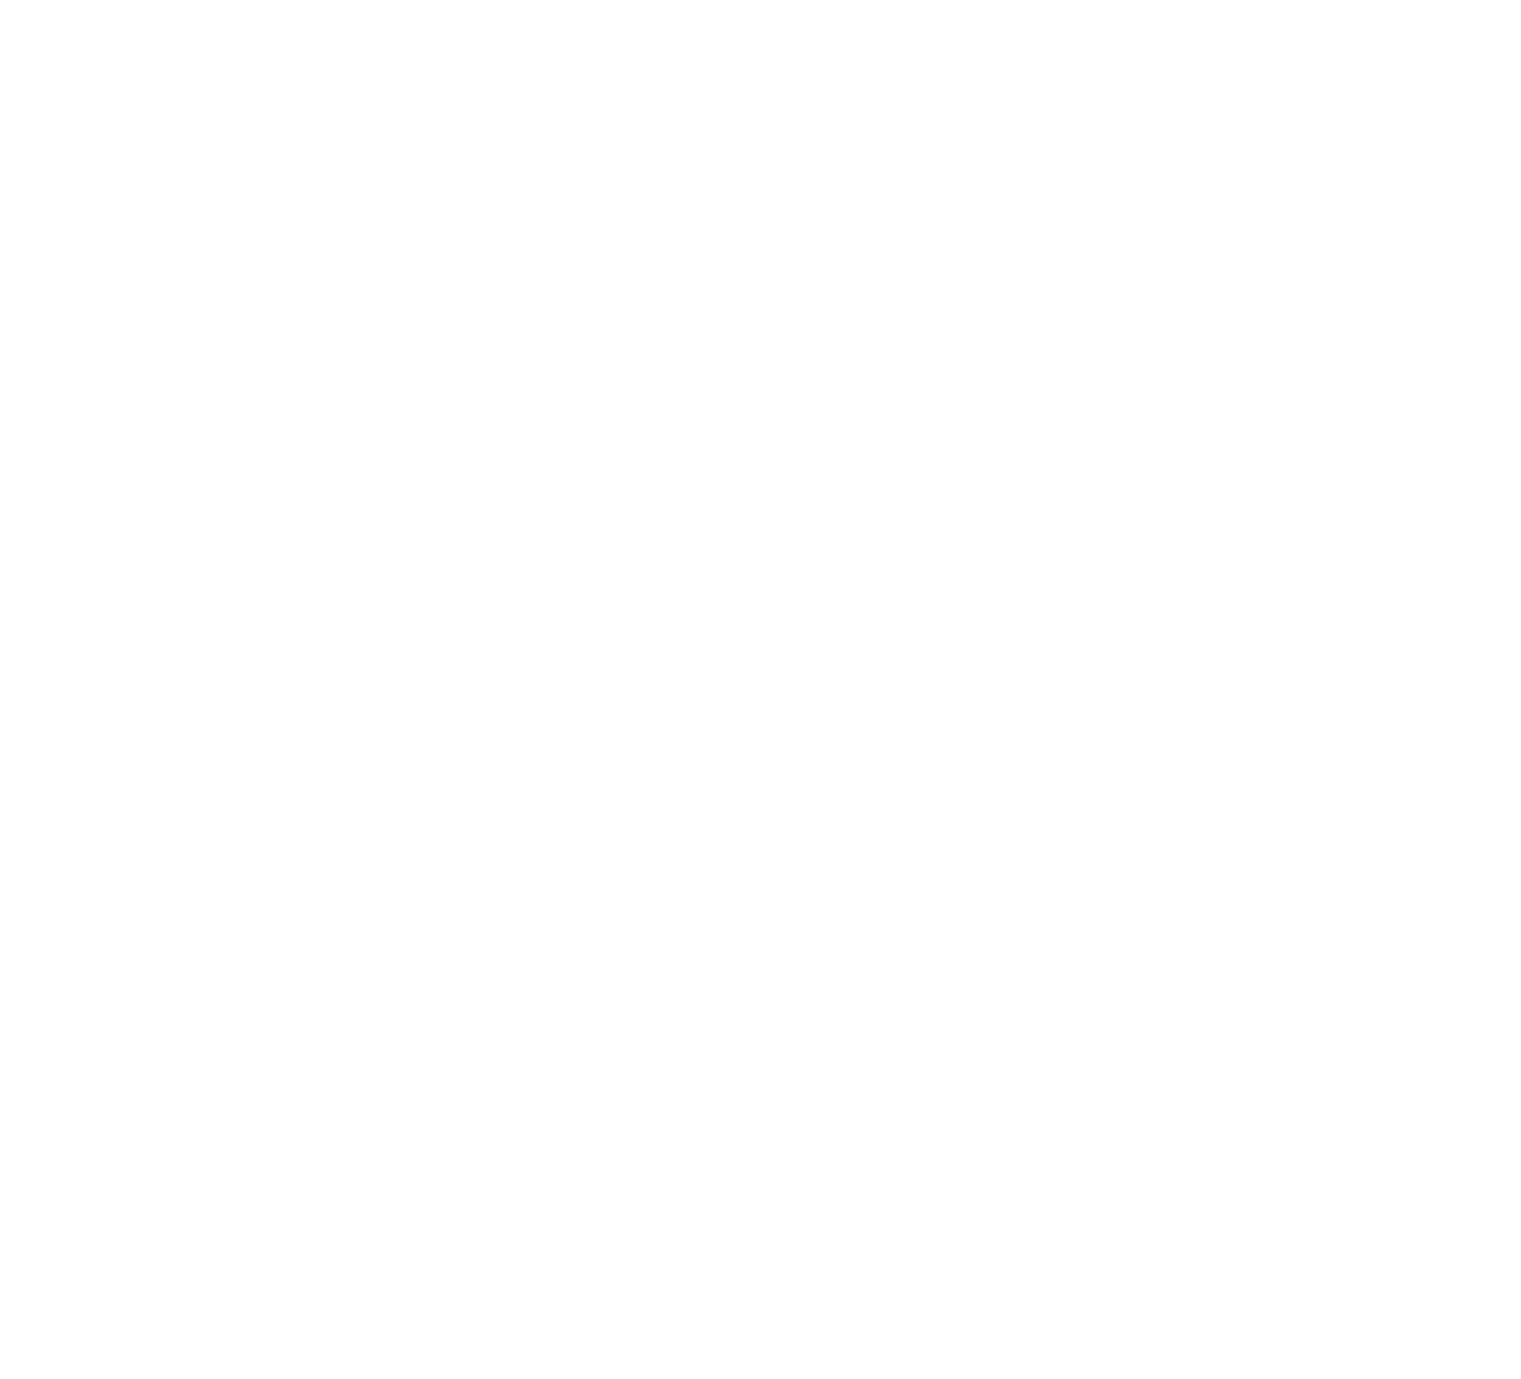 Alta Equipment Group logo pour fonds sombres (PNG transparent)